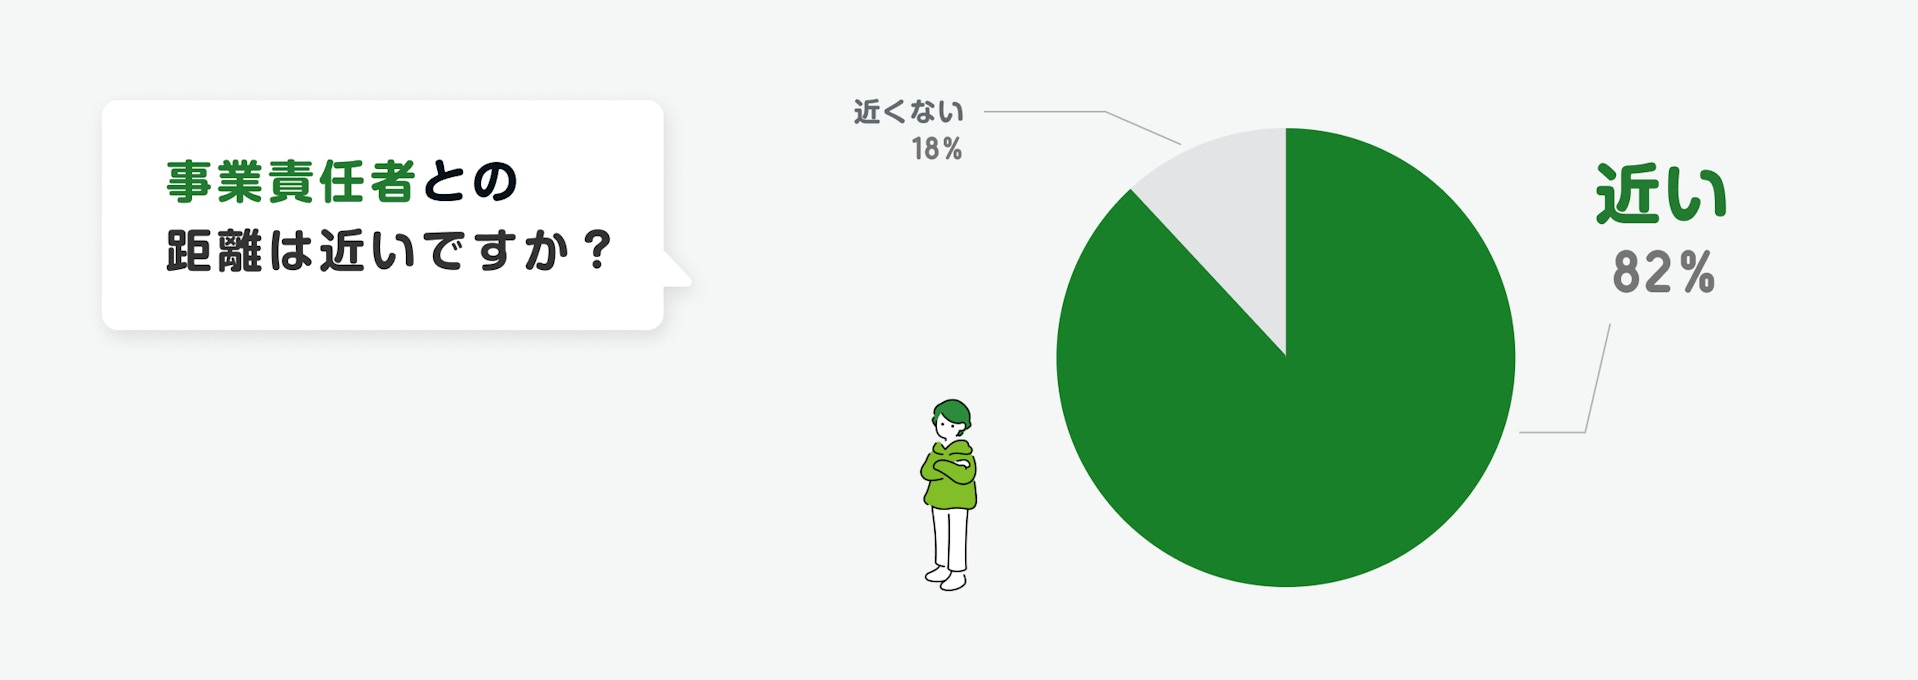 「事業責任者との距離は近いですか？」というアンケート結果を示す円グラフ。「近い」が82%、「近くない」が18%。